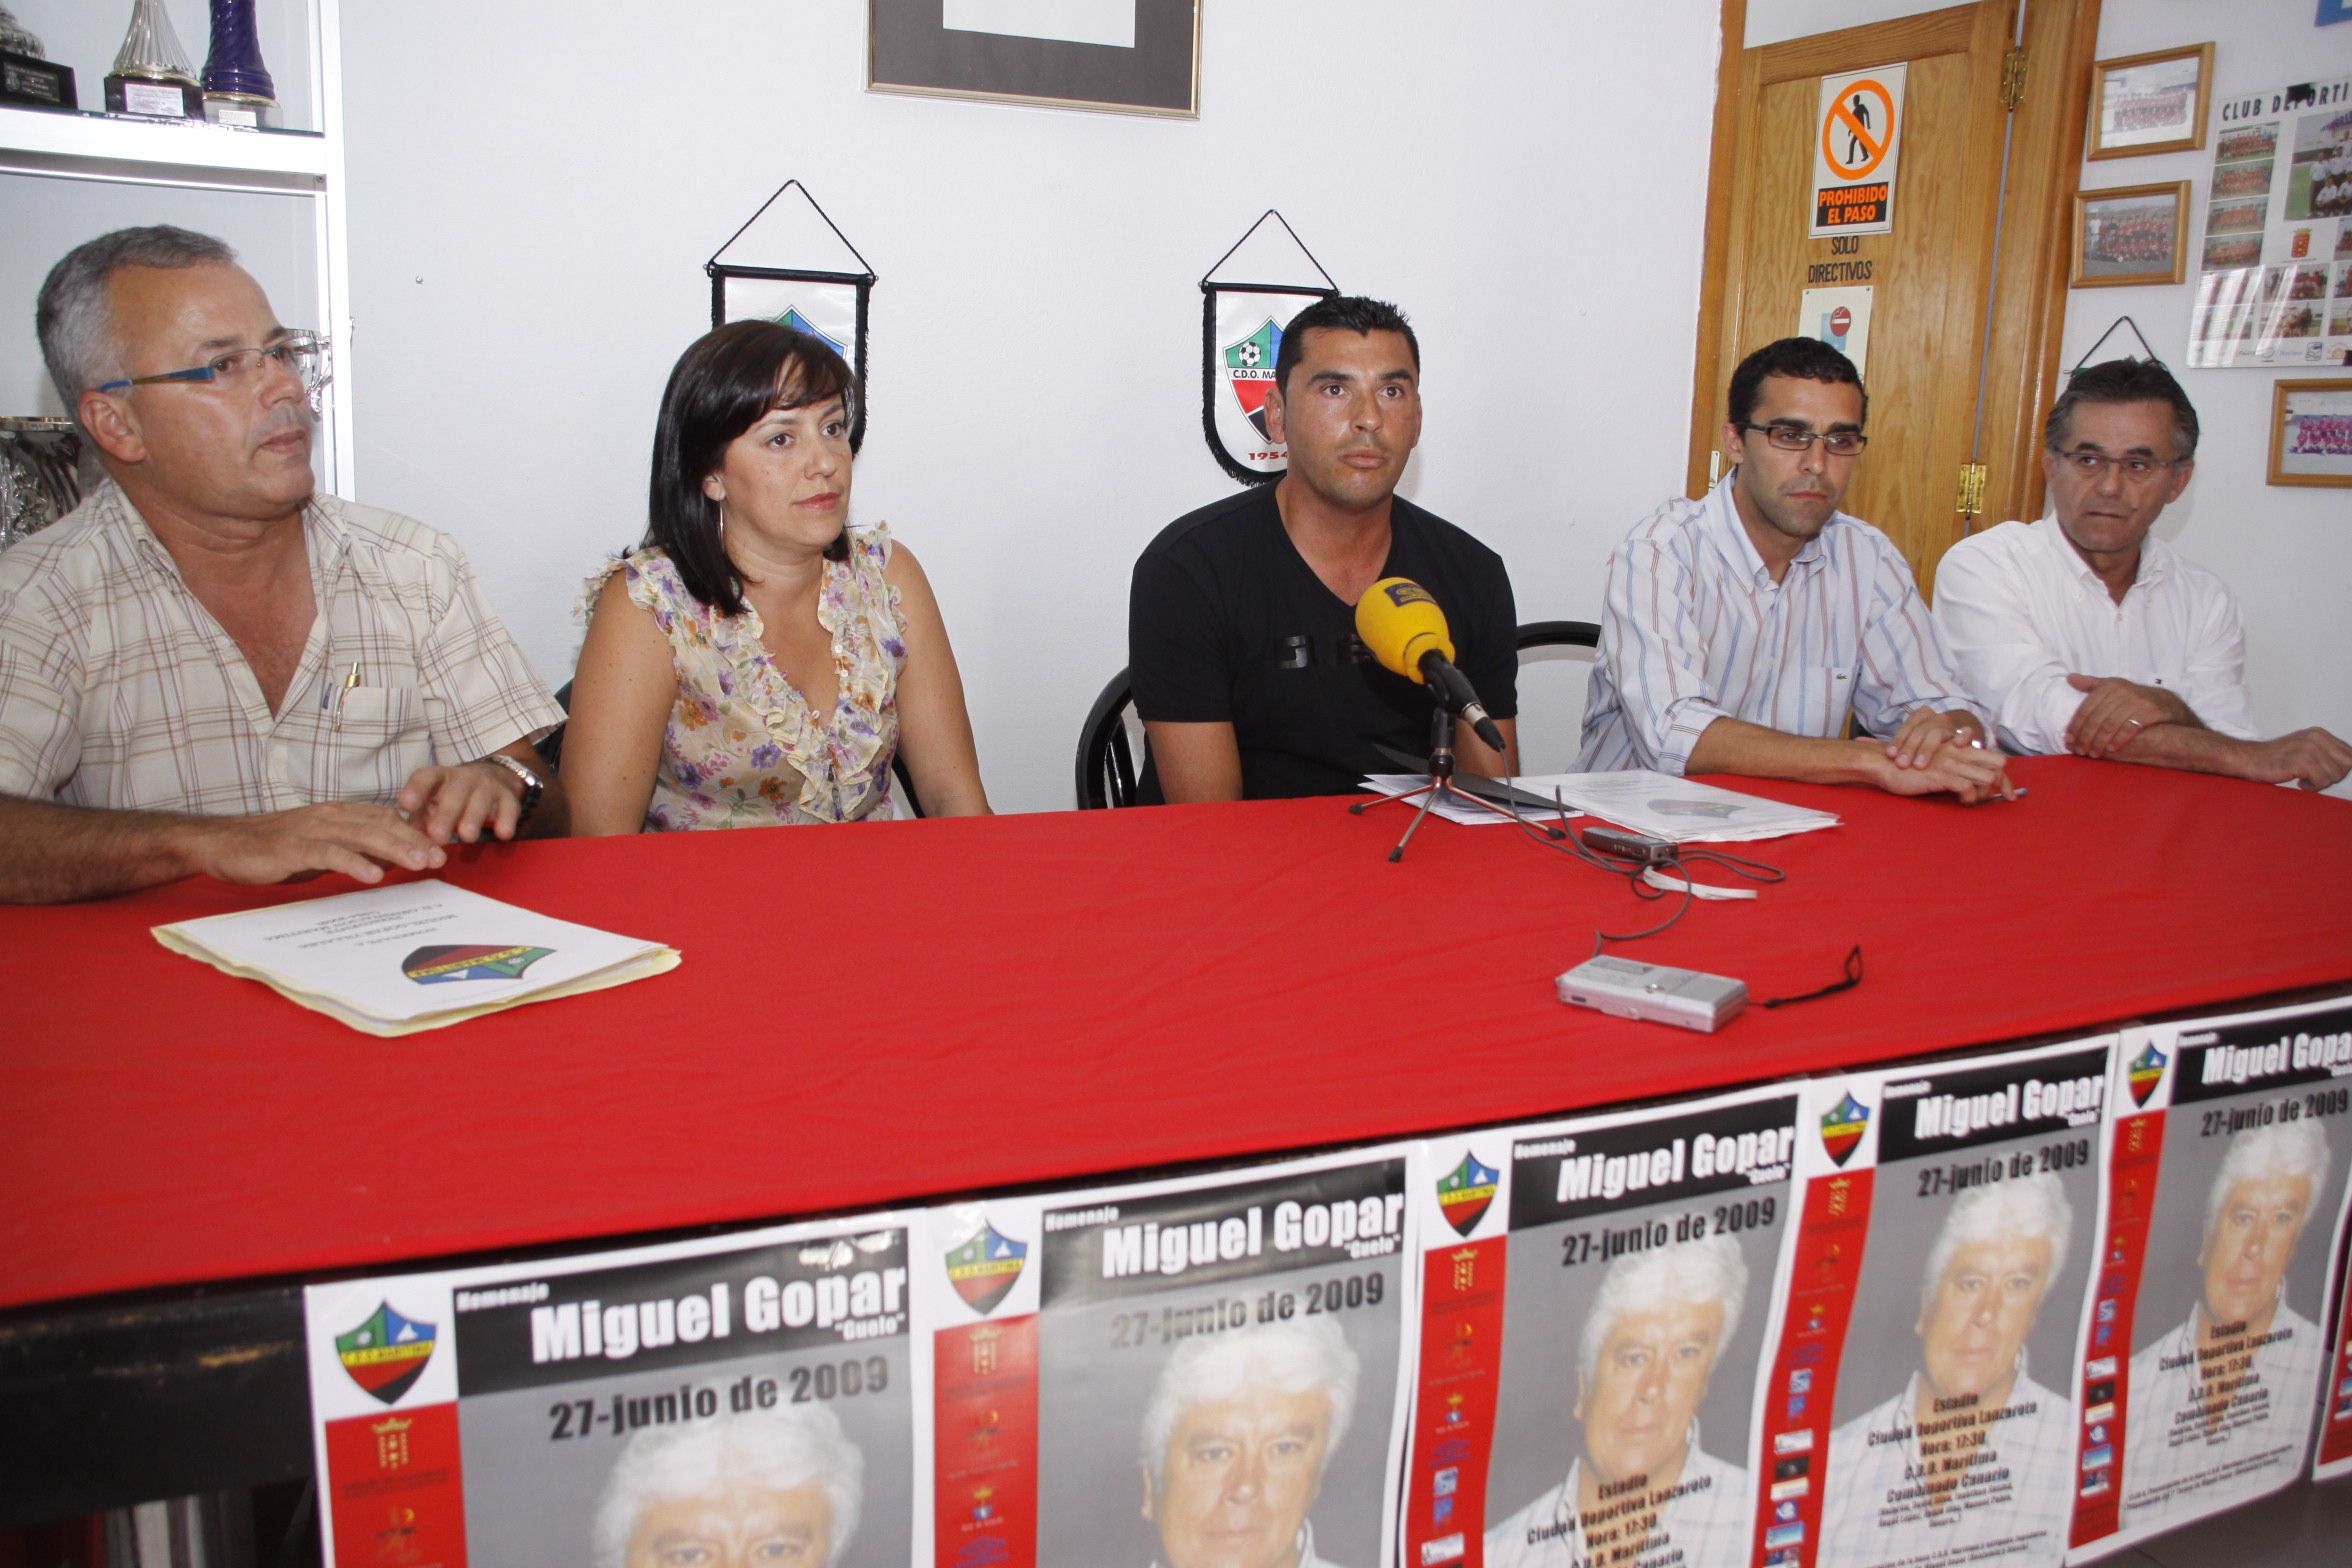 El homenaje a Miguel Gopar reunirá a la flor y nata del fútbol canario